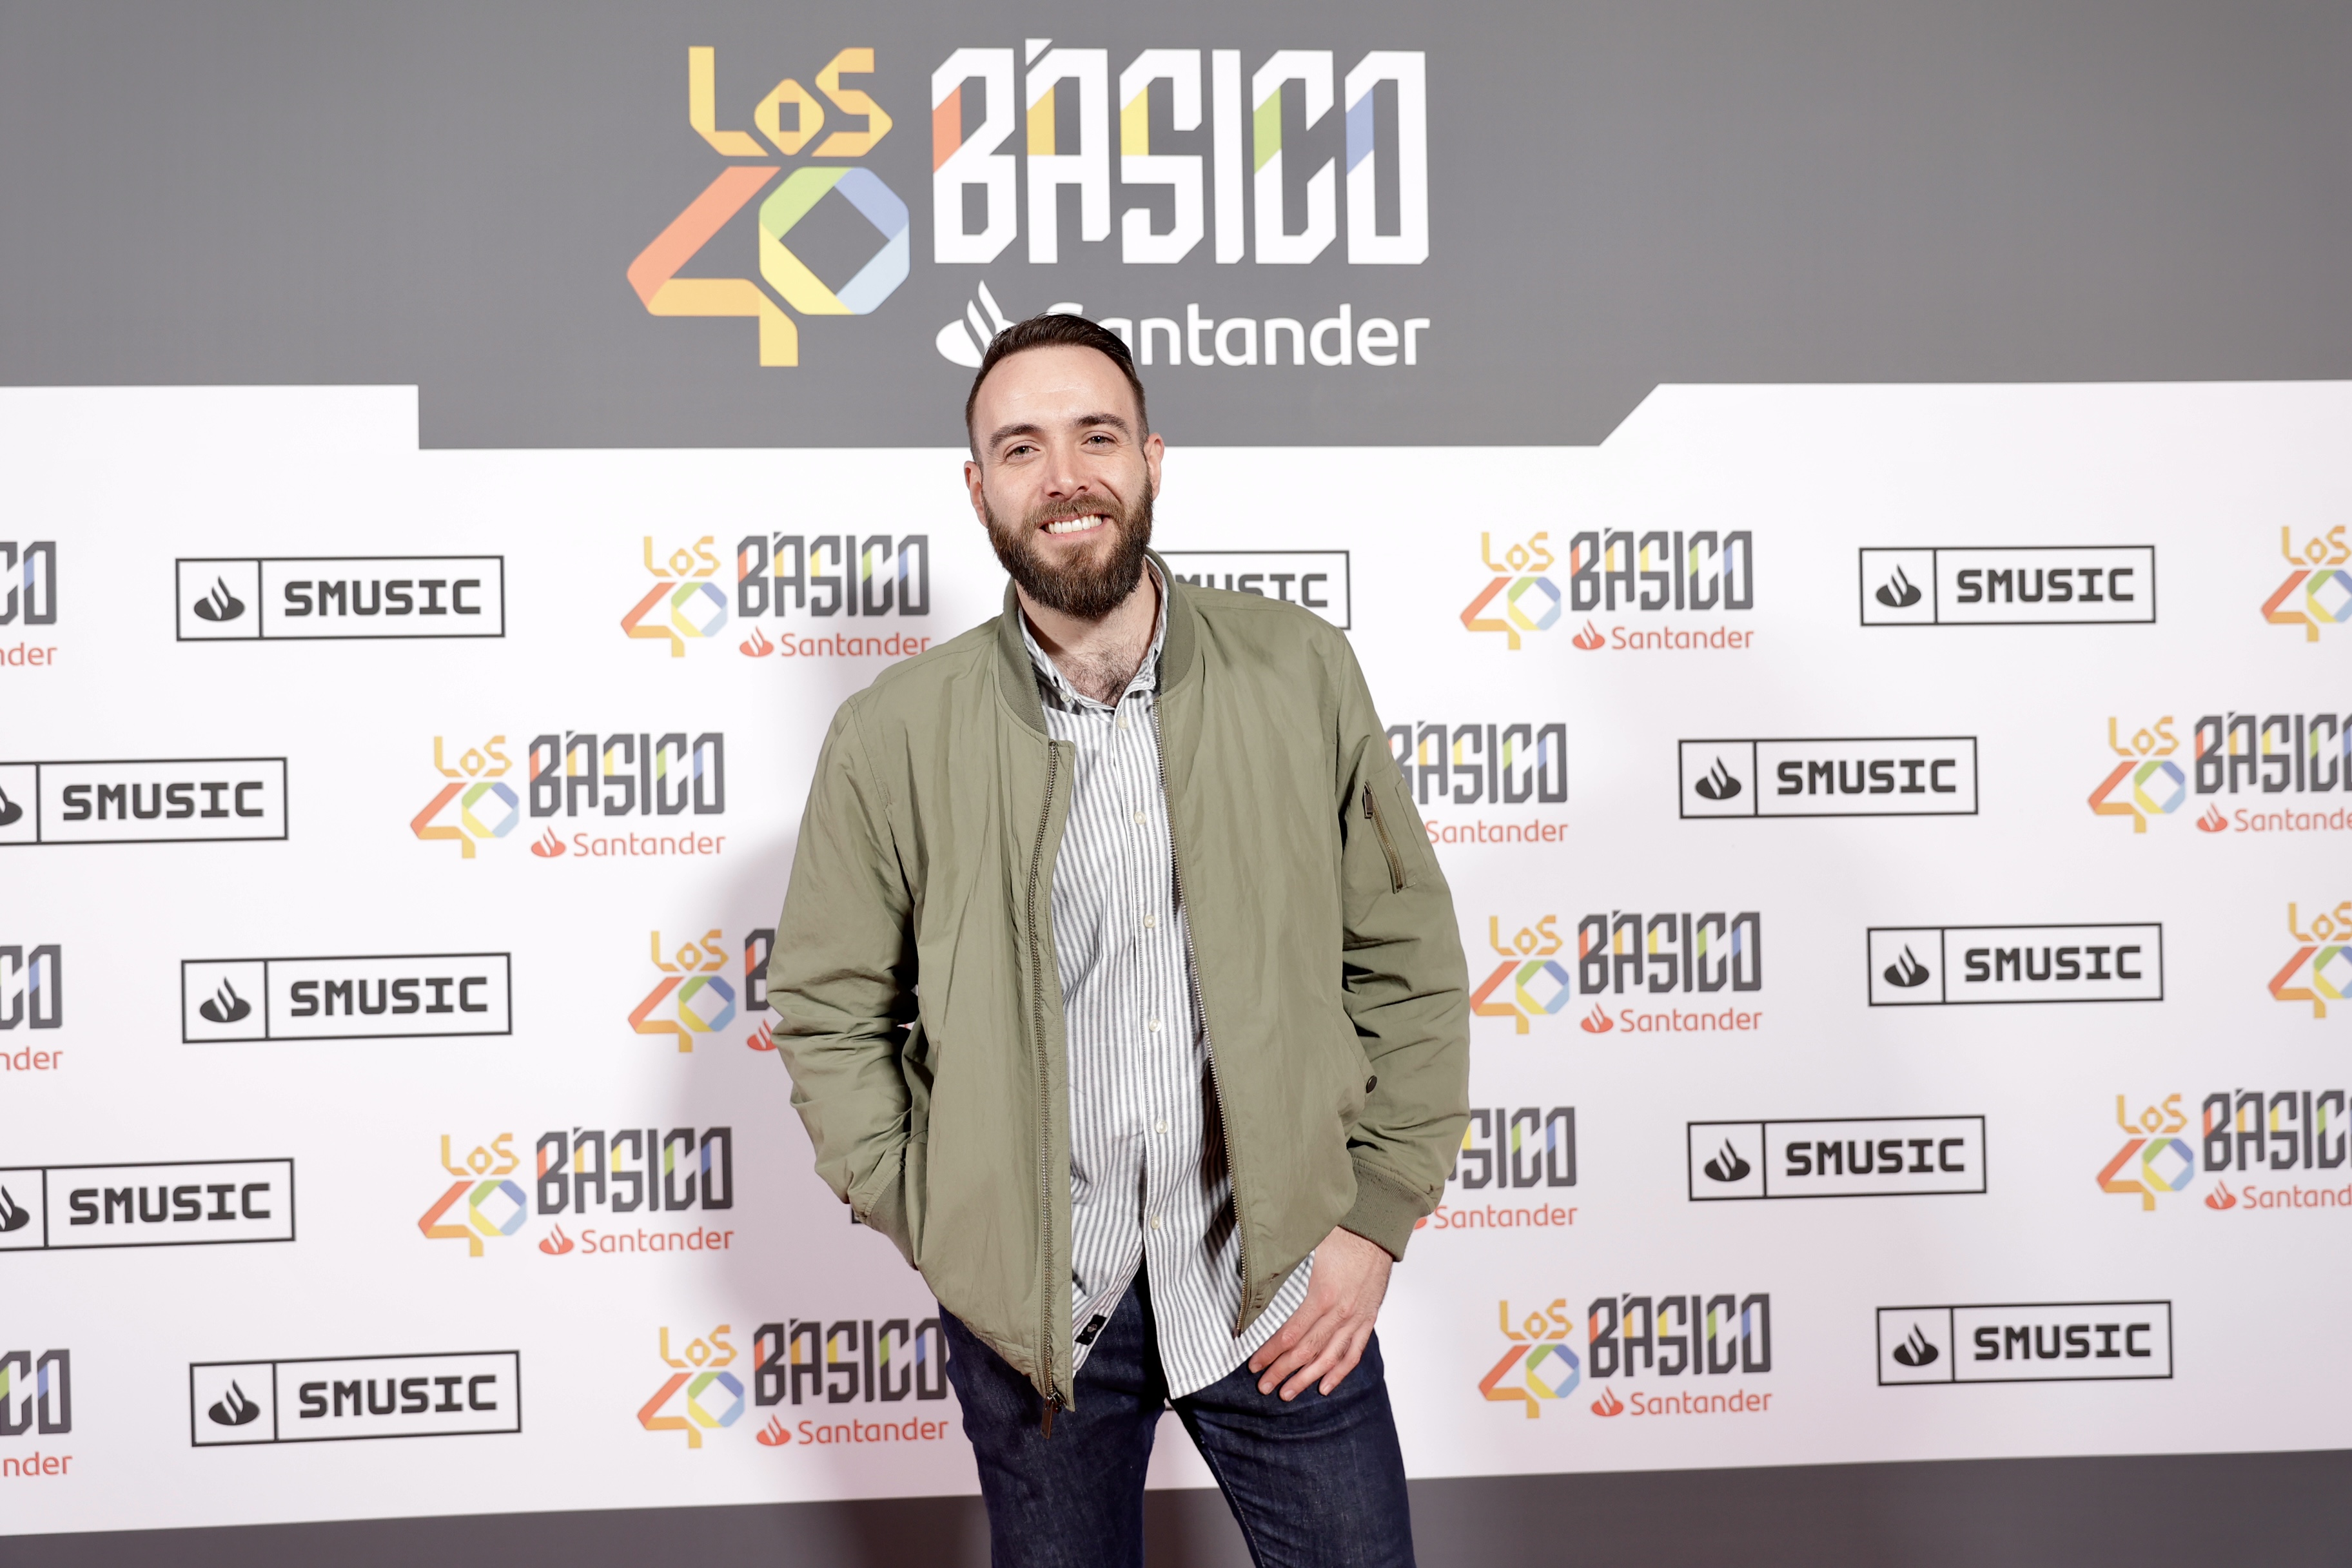 Félix Castillo, nuestro compañero de LOS40, lució así de sonriente en el photocall de LOS40 Básico con David Bisbal.